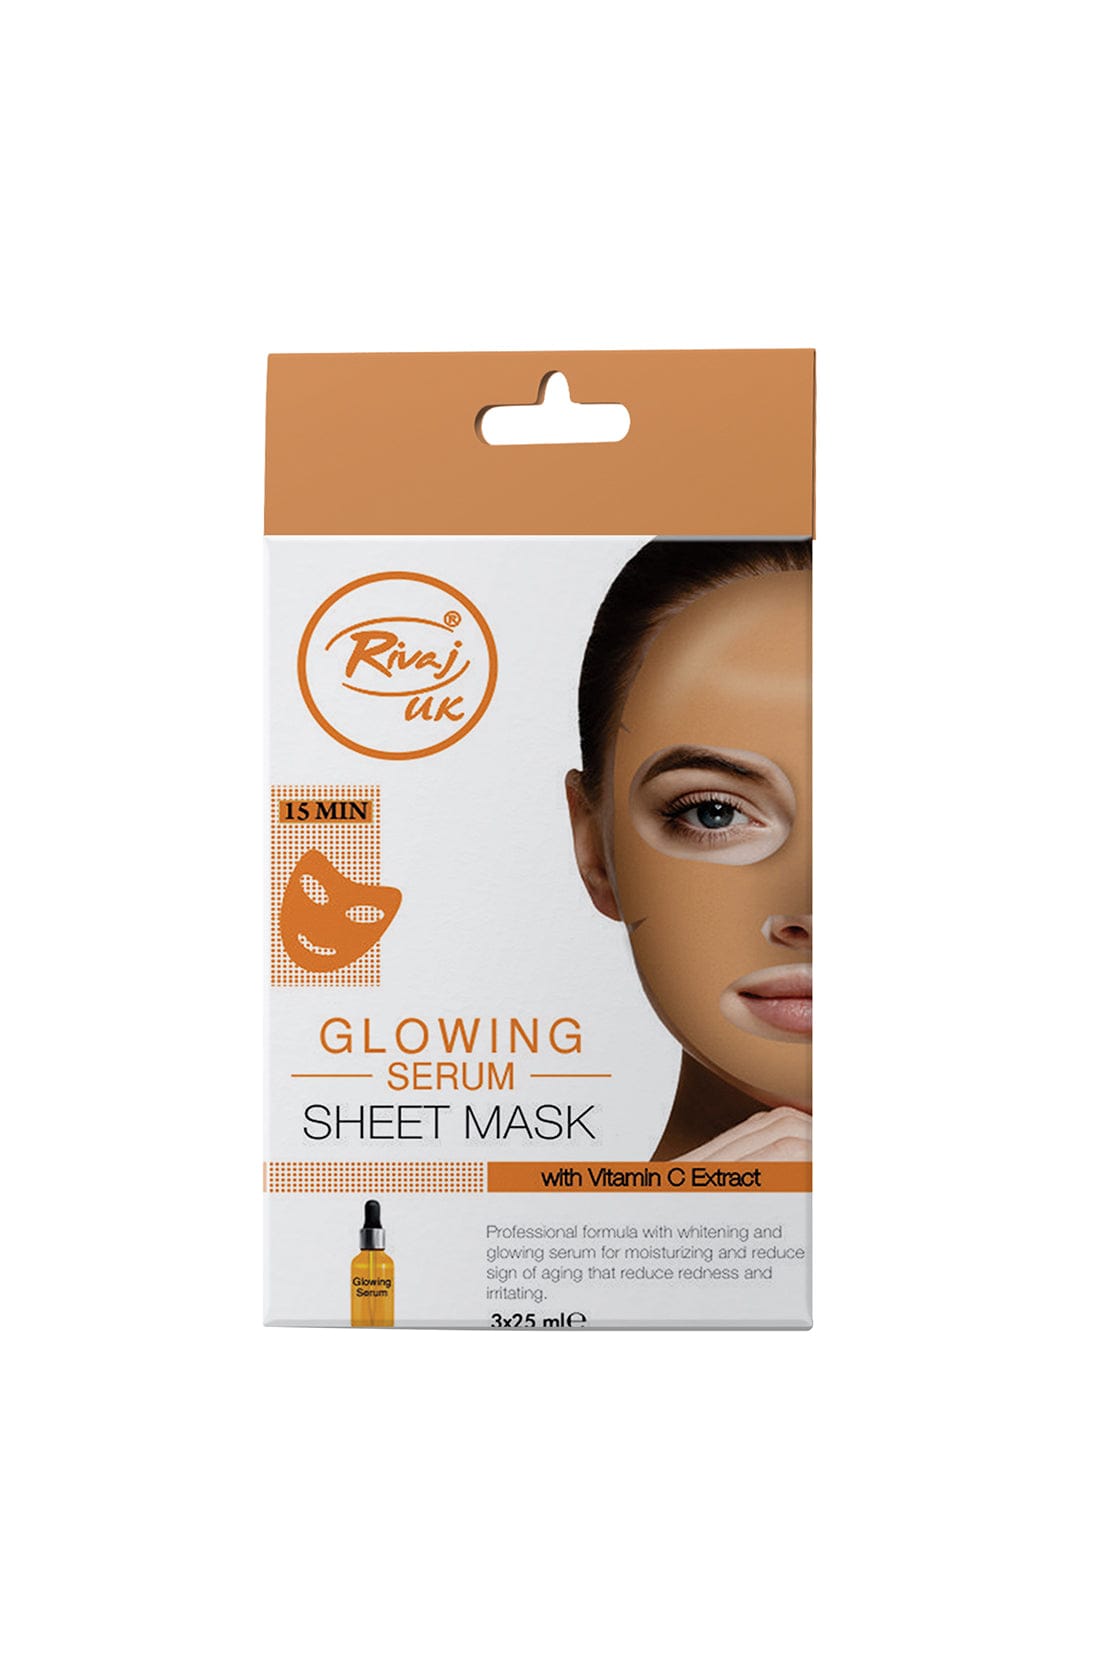 Rivaj Uk Glowing Serum Sheet Mask